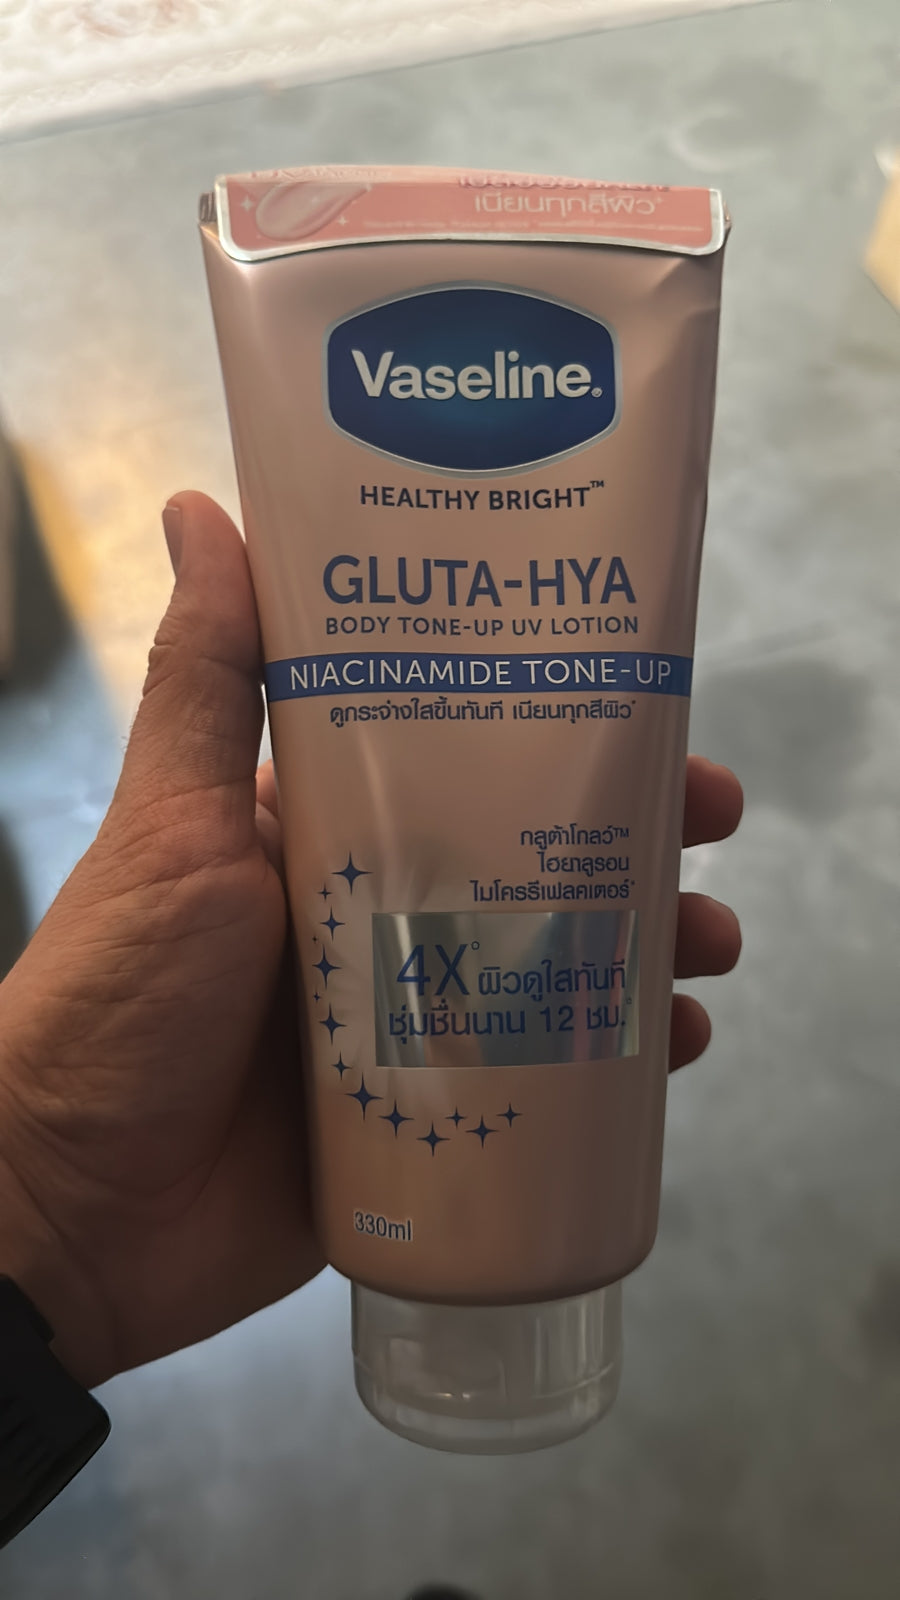 Vaseline Healthy Bright Gluta-Hya Body Tone-Up UV Lotion